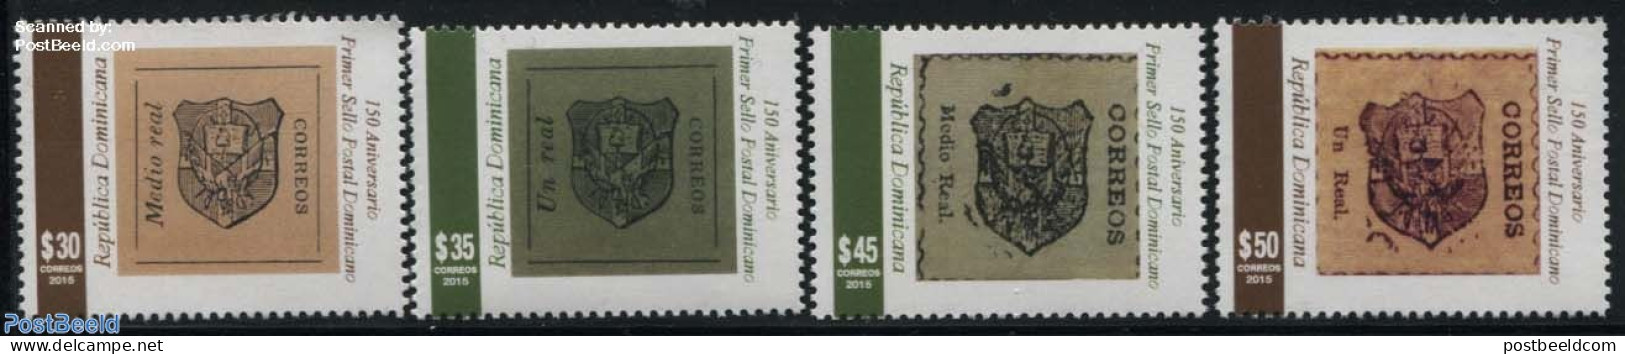 Dominican Republic 2015 150 Years Stamps 4v, Mint NH, Stamps On Stamps - Briefmarken Auf Briefmarken